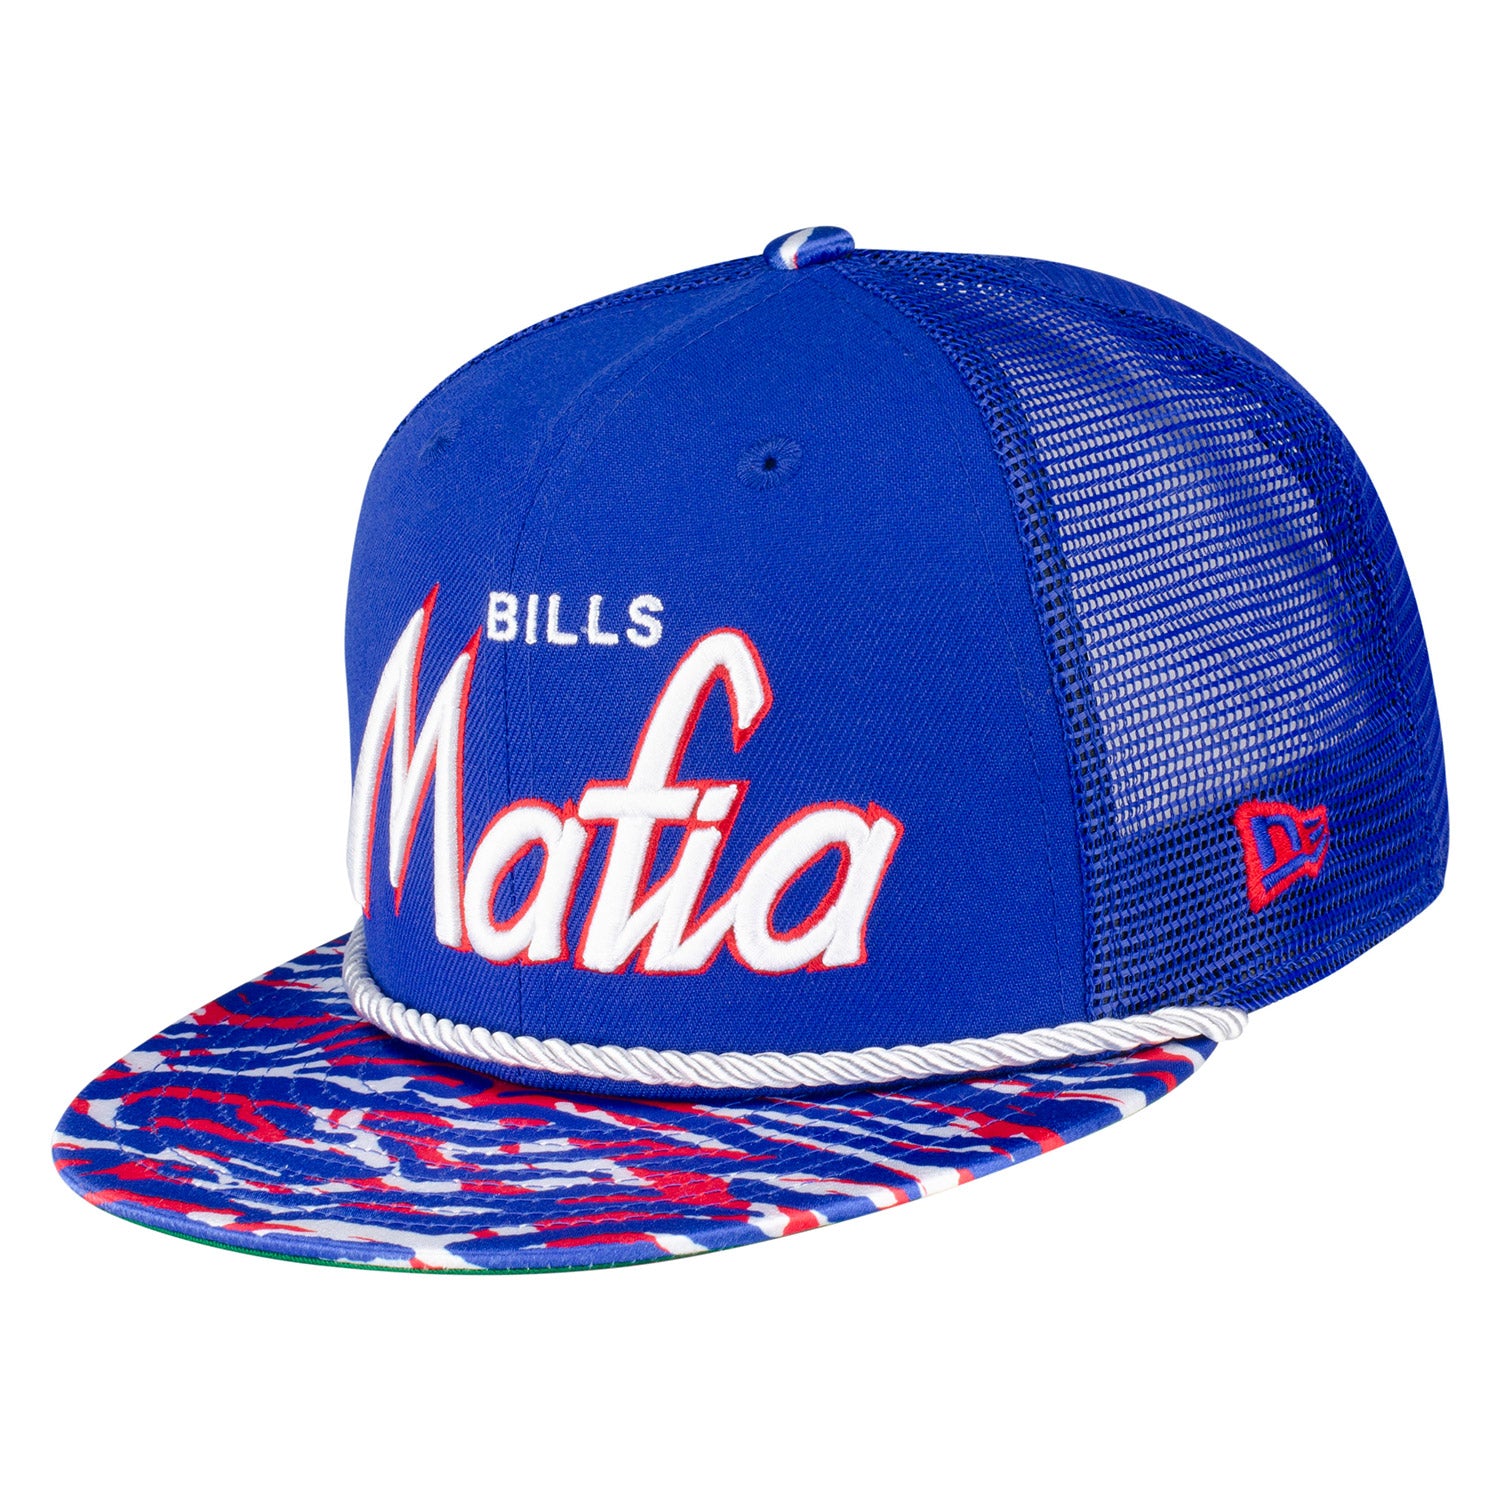 Baseball Caps, Shop Snapbacks & Baseball Hats